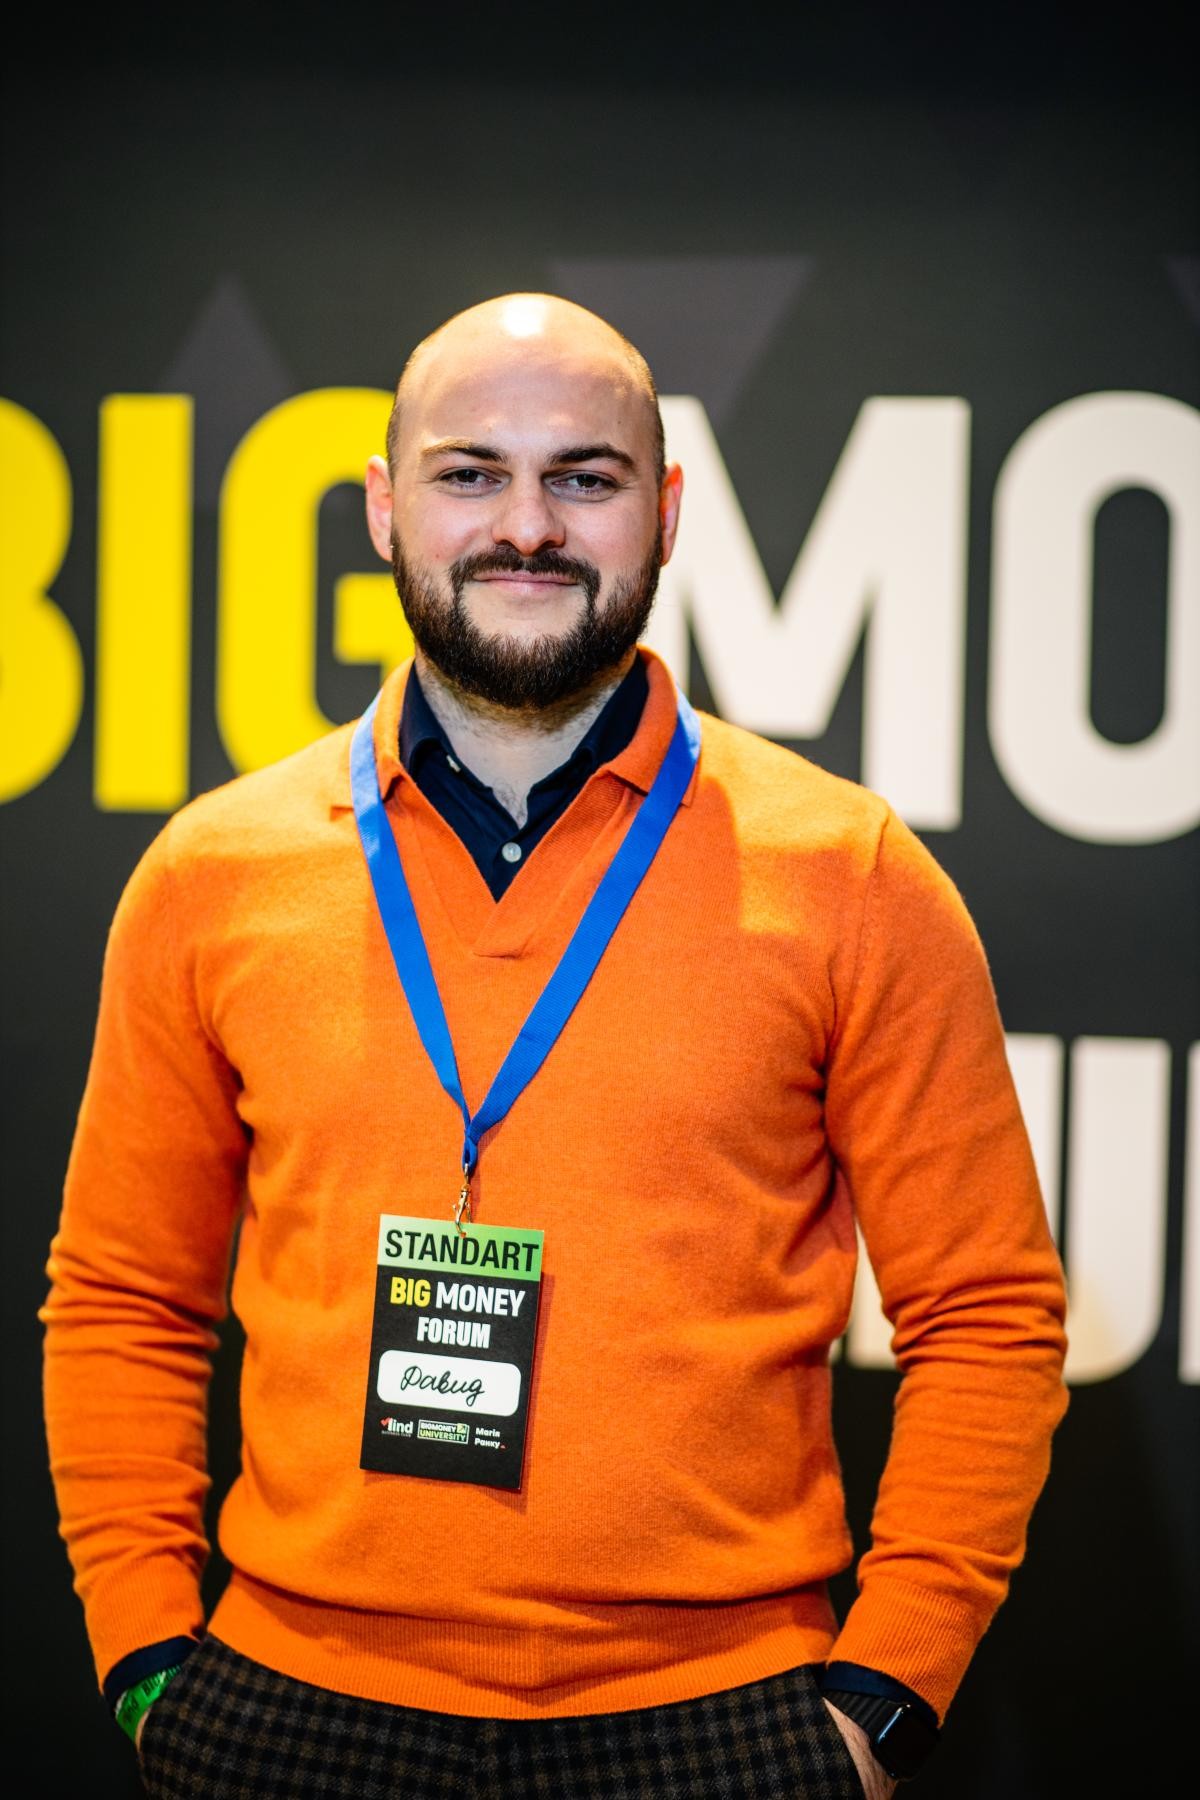 CEO Laduchi Consult, David Sherozia en el forum de BIGMoney